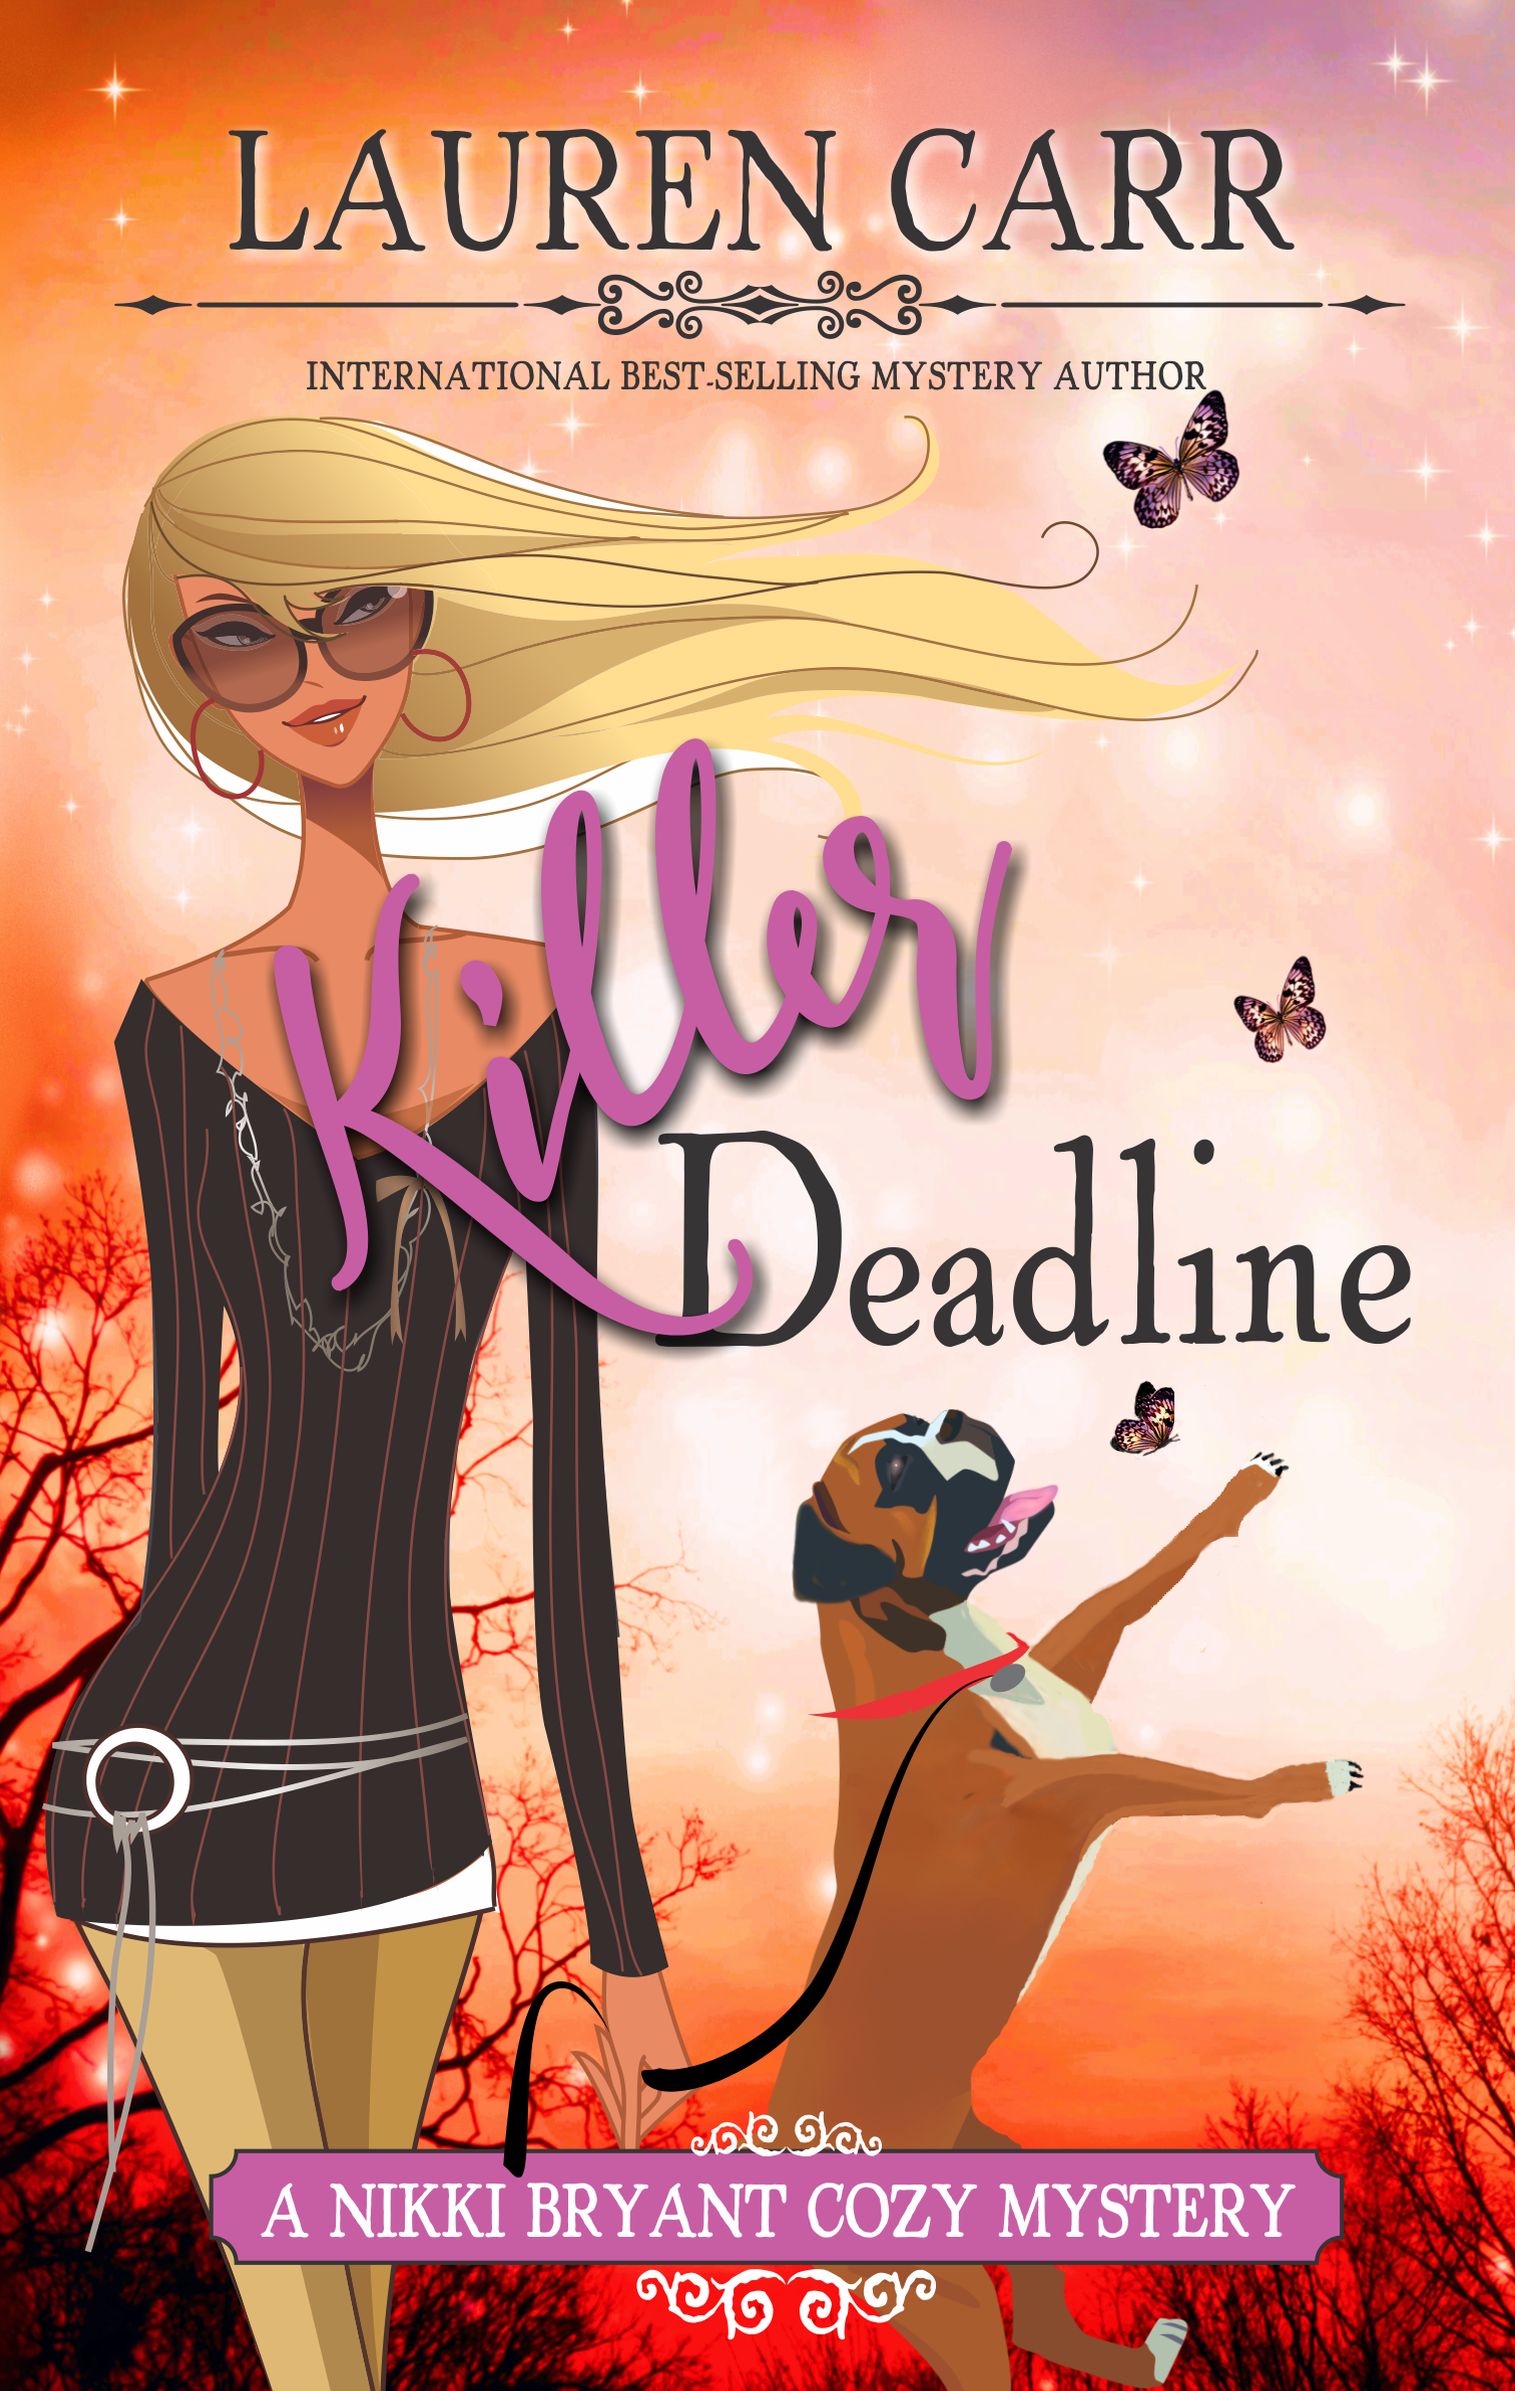 killer deadline eBook cover